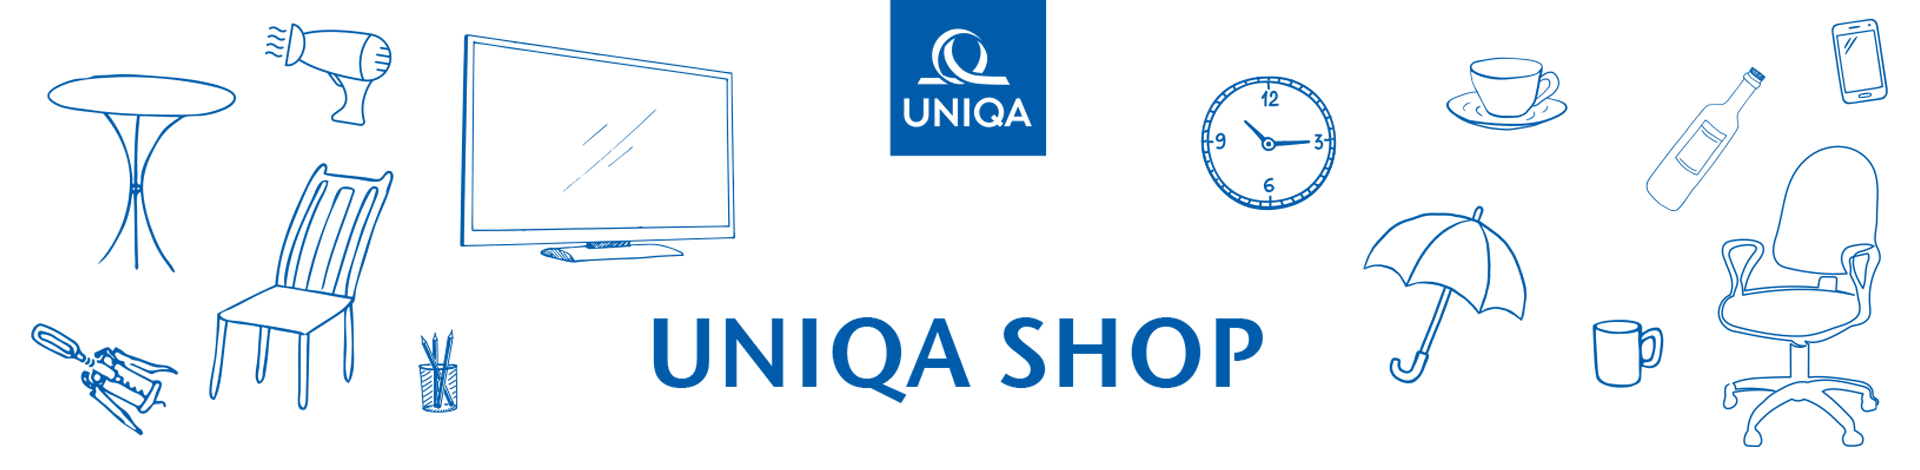 uniqa_shop_main _banner